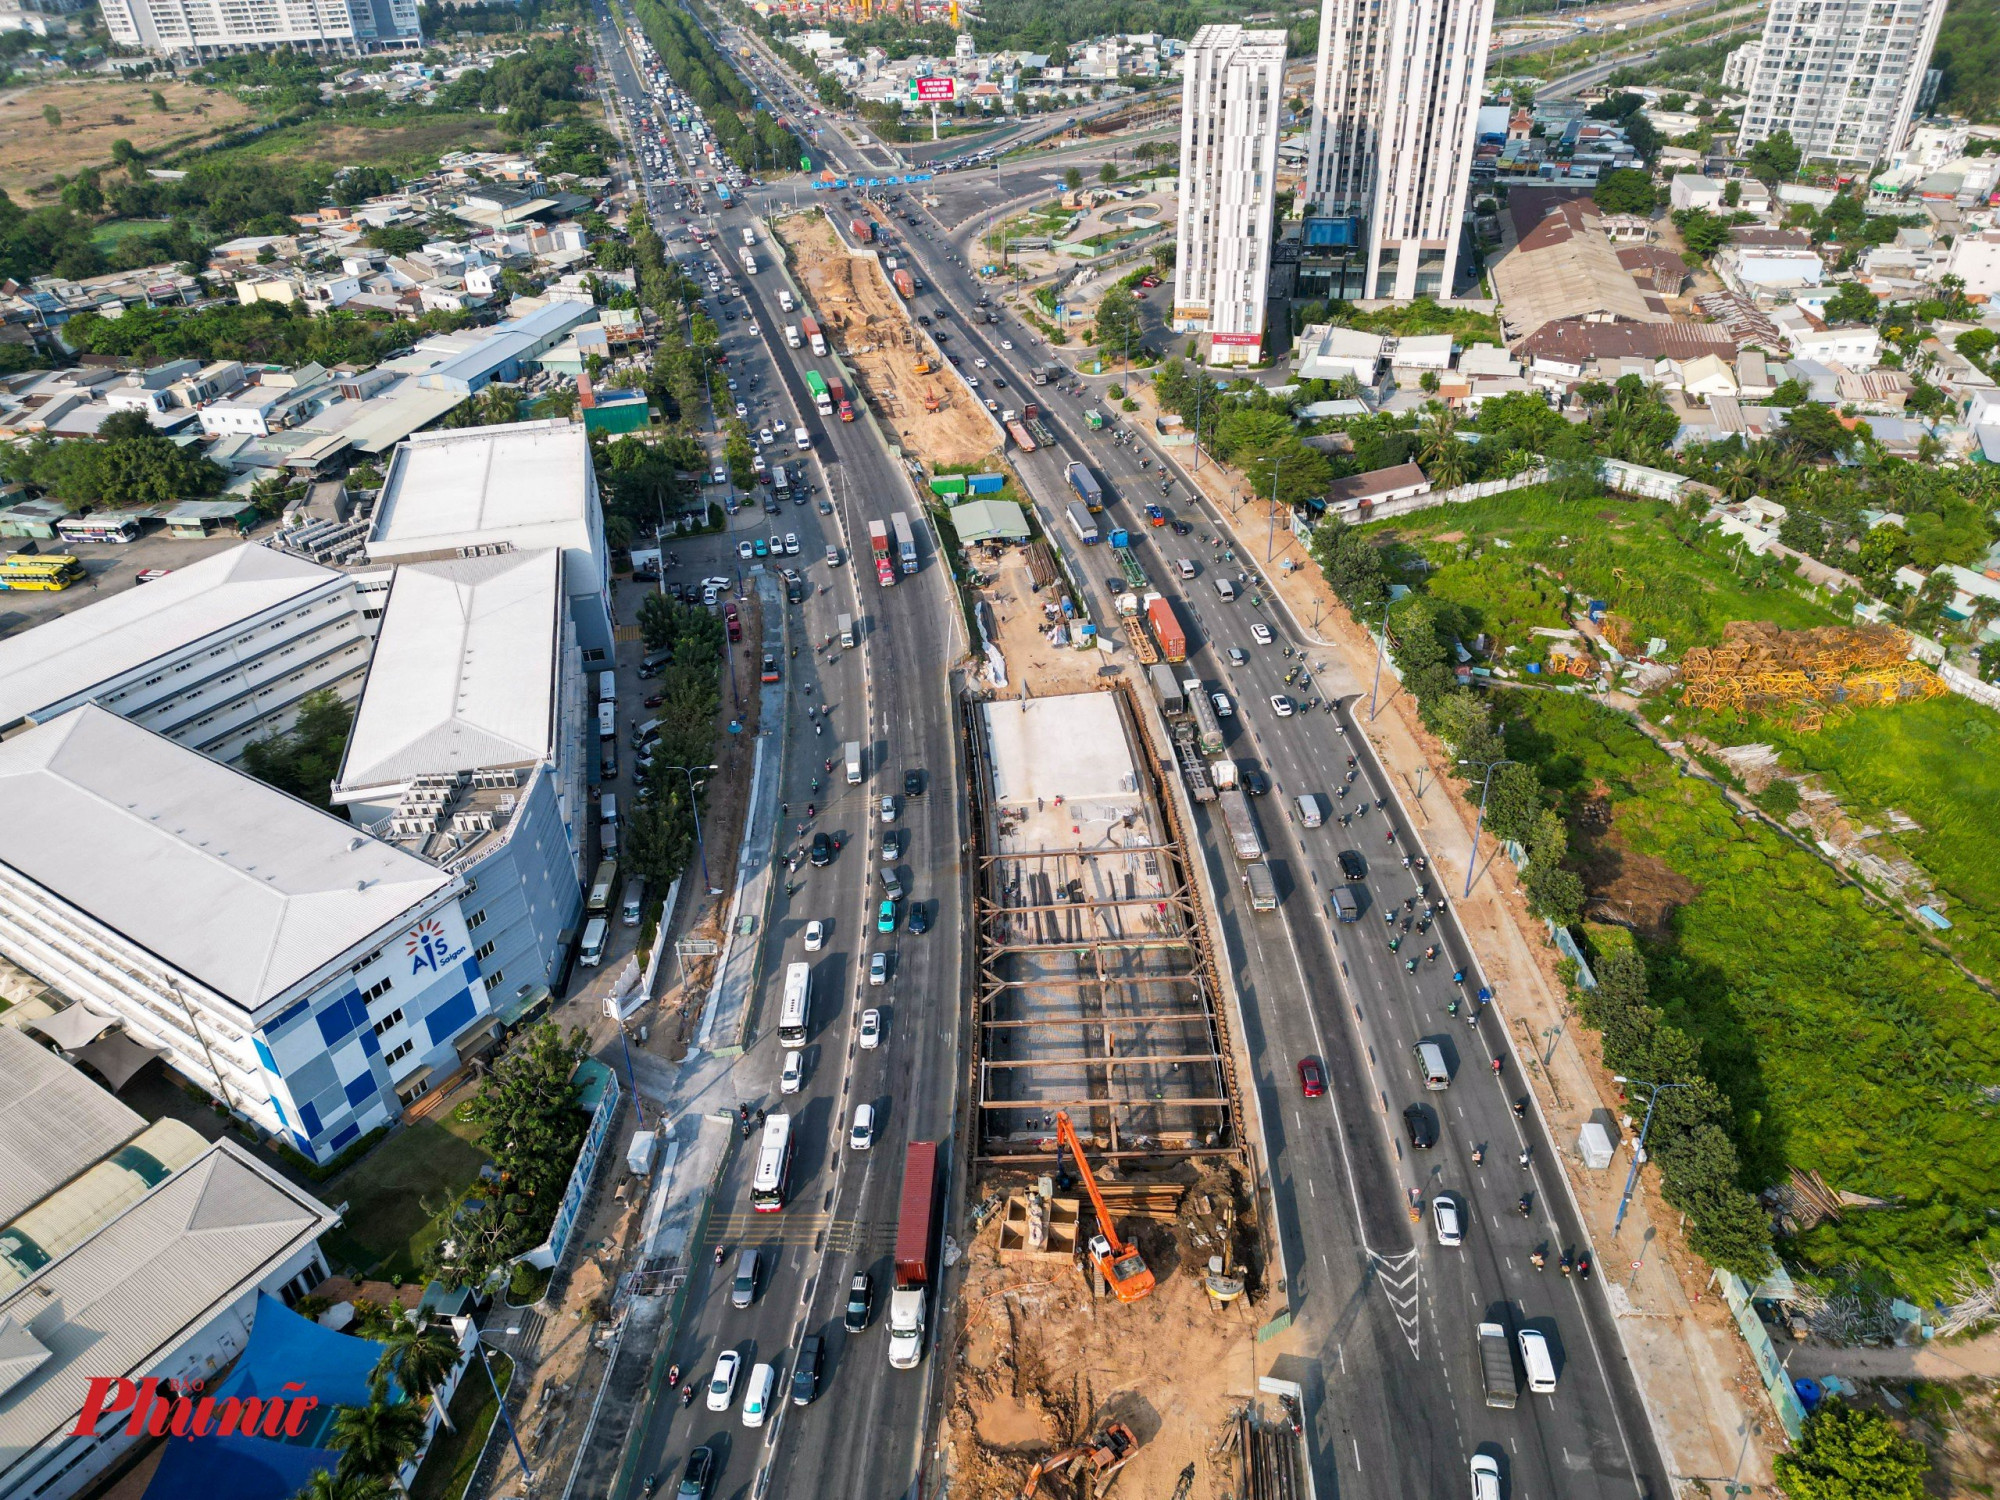 Dự kiến đoạn hầm chui trên đường Mai Chí Thọ sẽ hoàn thành vào khoảng tháng 10/2024, giúp giải tỏa áp lực lưu thông khu vực nút giao Mai Chí Thọ - Đồng Văn Cống cũng như từ đại lộ Mai Chí Thọ lên đường dẫn cao tốc TPHCM - Long Thành - Dầu Giây.